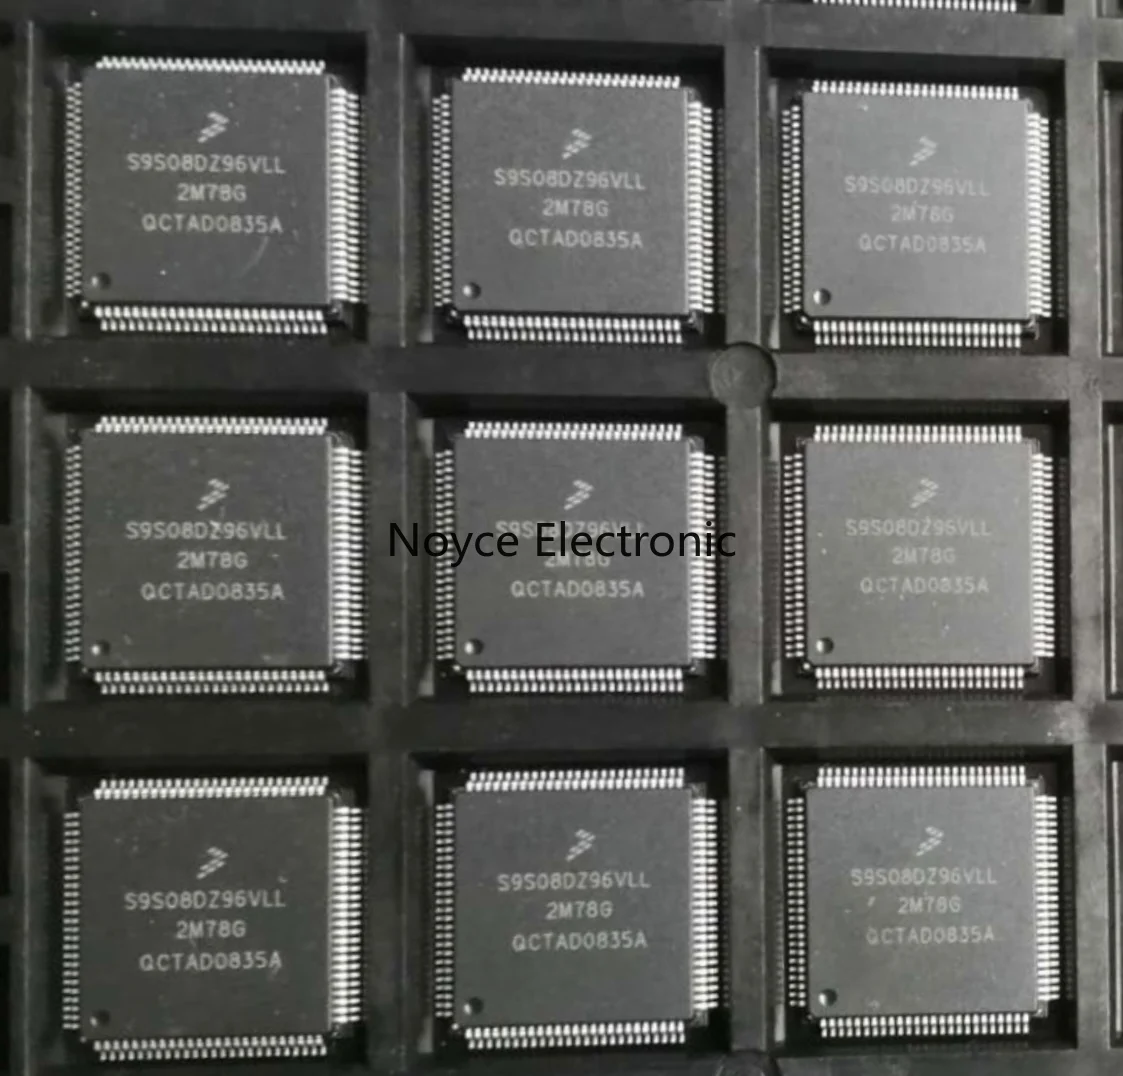 1pcs/S9S08DZ96 new original genuine spot S9S08DZ96VLL TQFP100 microcontroller chip 1pcs lot ep1c6t144c8n ep1c6t144i7n ep1c6t144 c8n i7n qfp144 microcontroller microprocessor chip